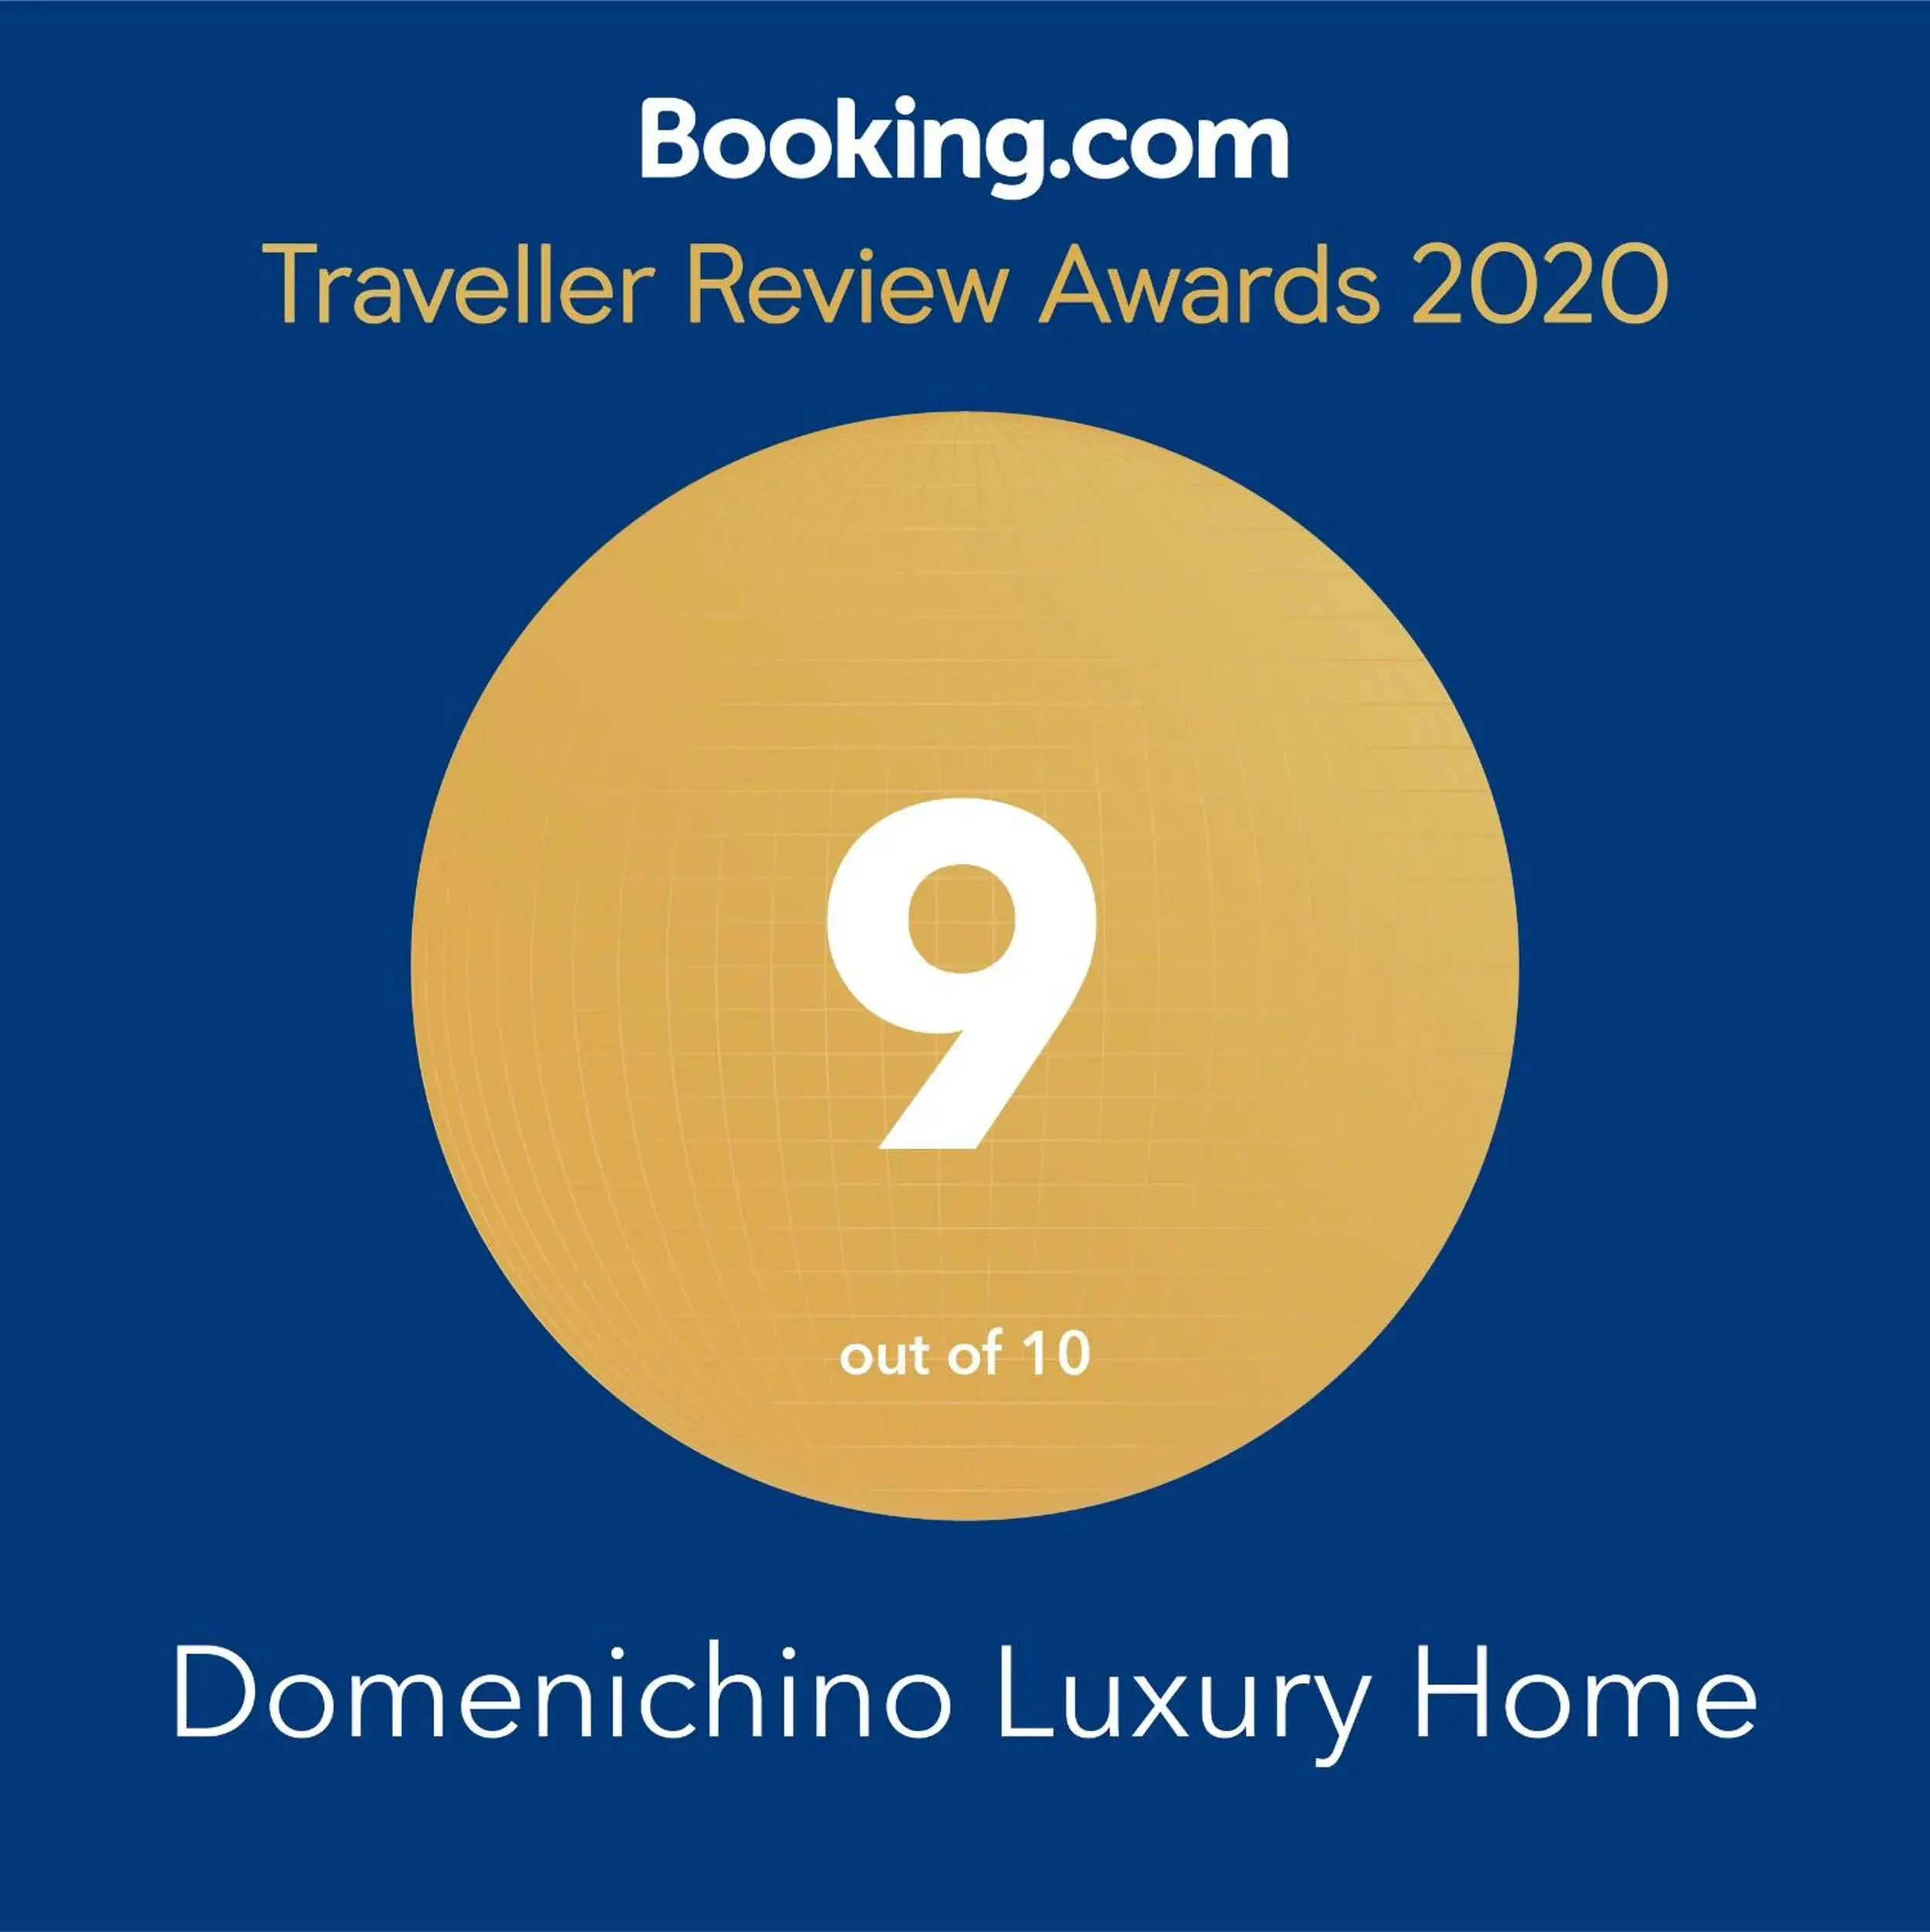 Domenichino Luxury Home